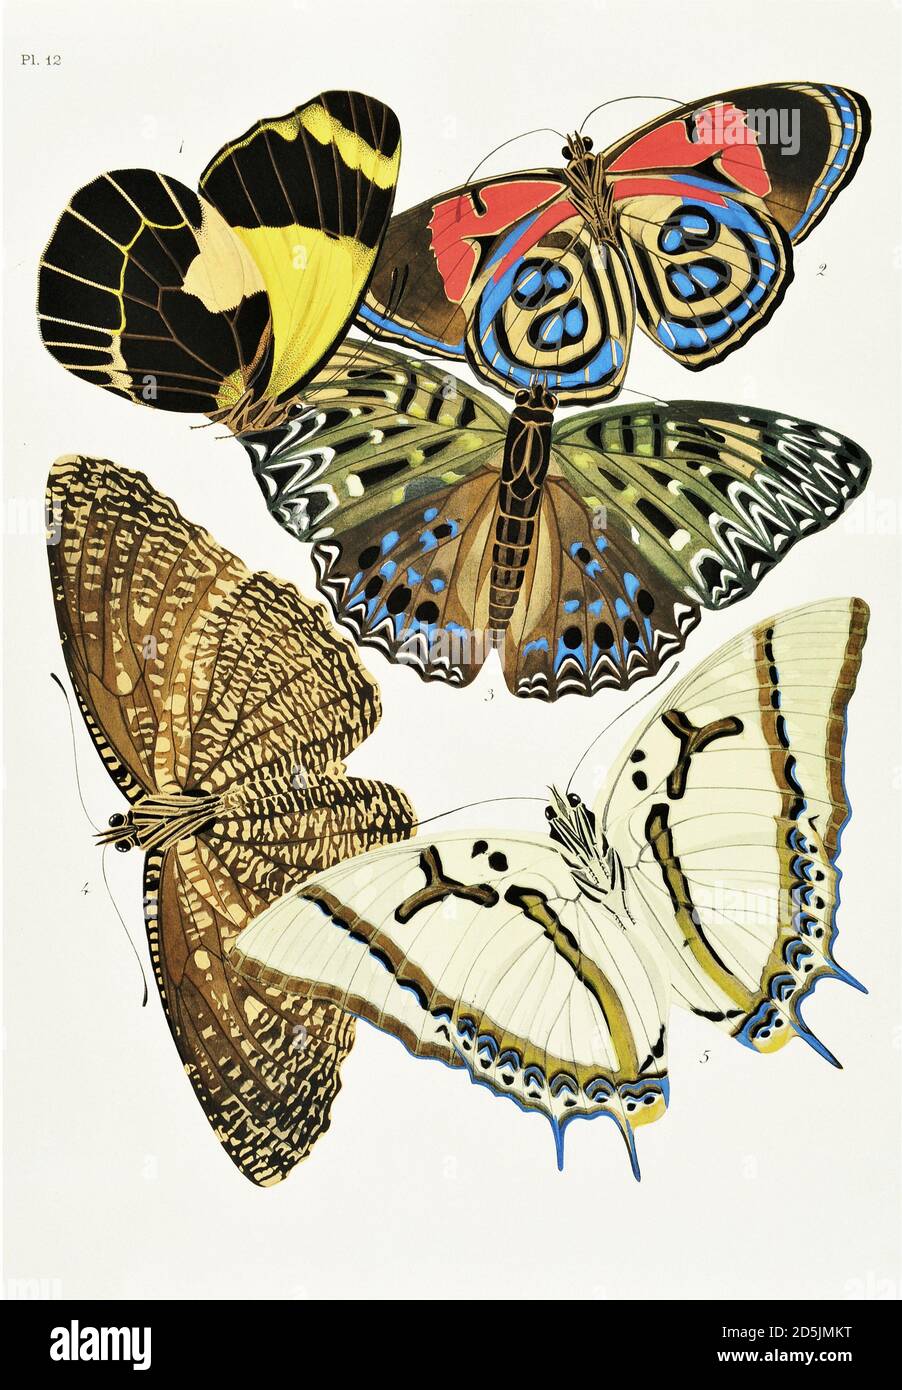 Farfalle: Venti pannelli fototype colorati al modello. PL XII 1. Delia neagra (Nuova Guinea) 2. Catagramma kolyma (Amazzonia) 3. Dichorragia nesim Foto Stock